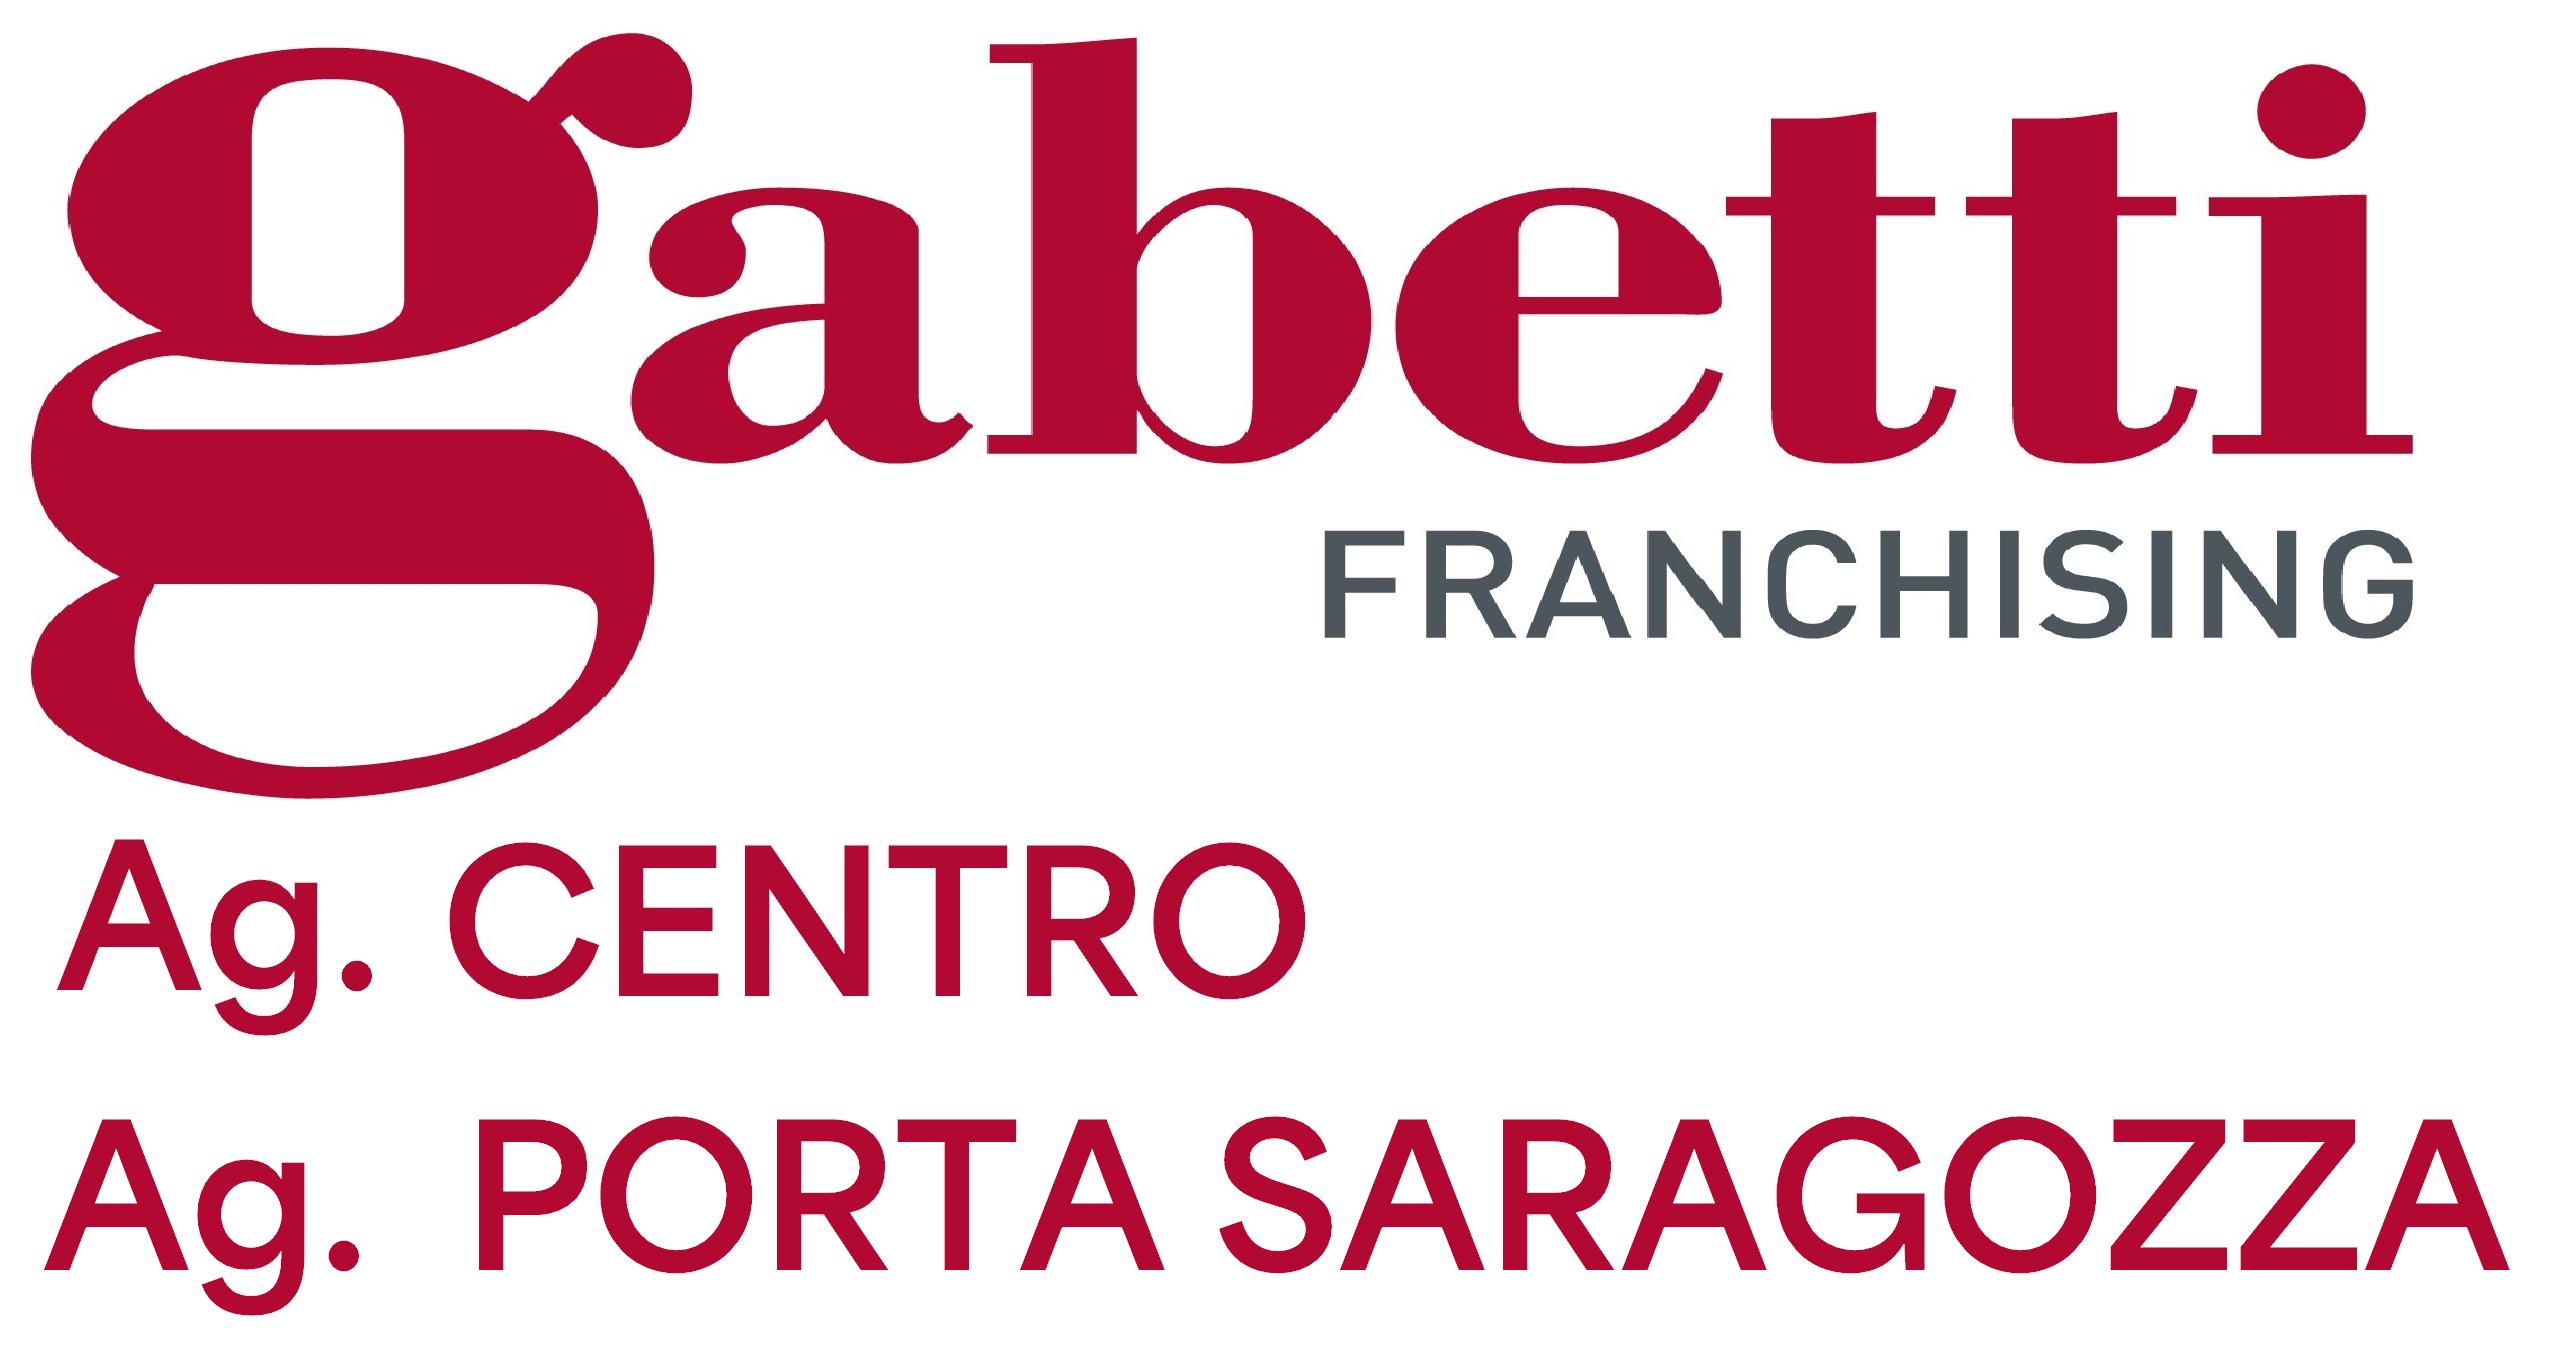 Agenzia Gabetti Bologna Centro